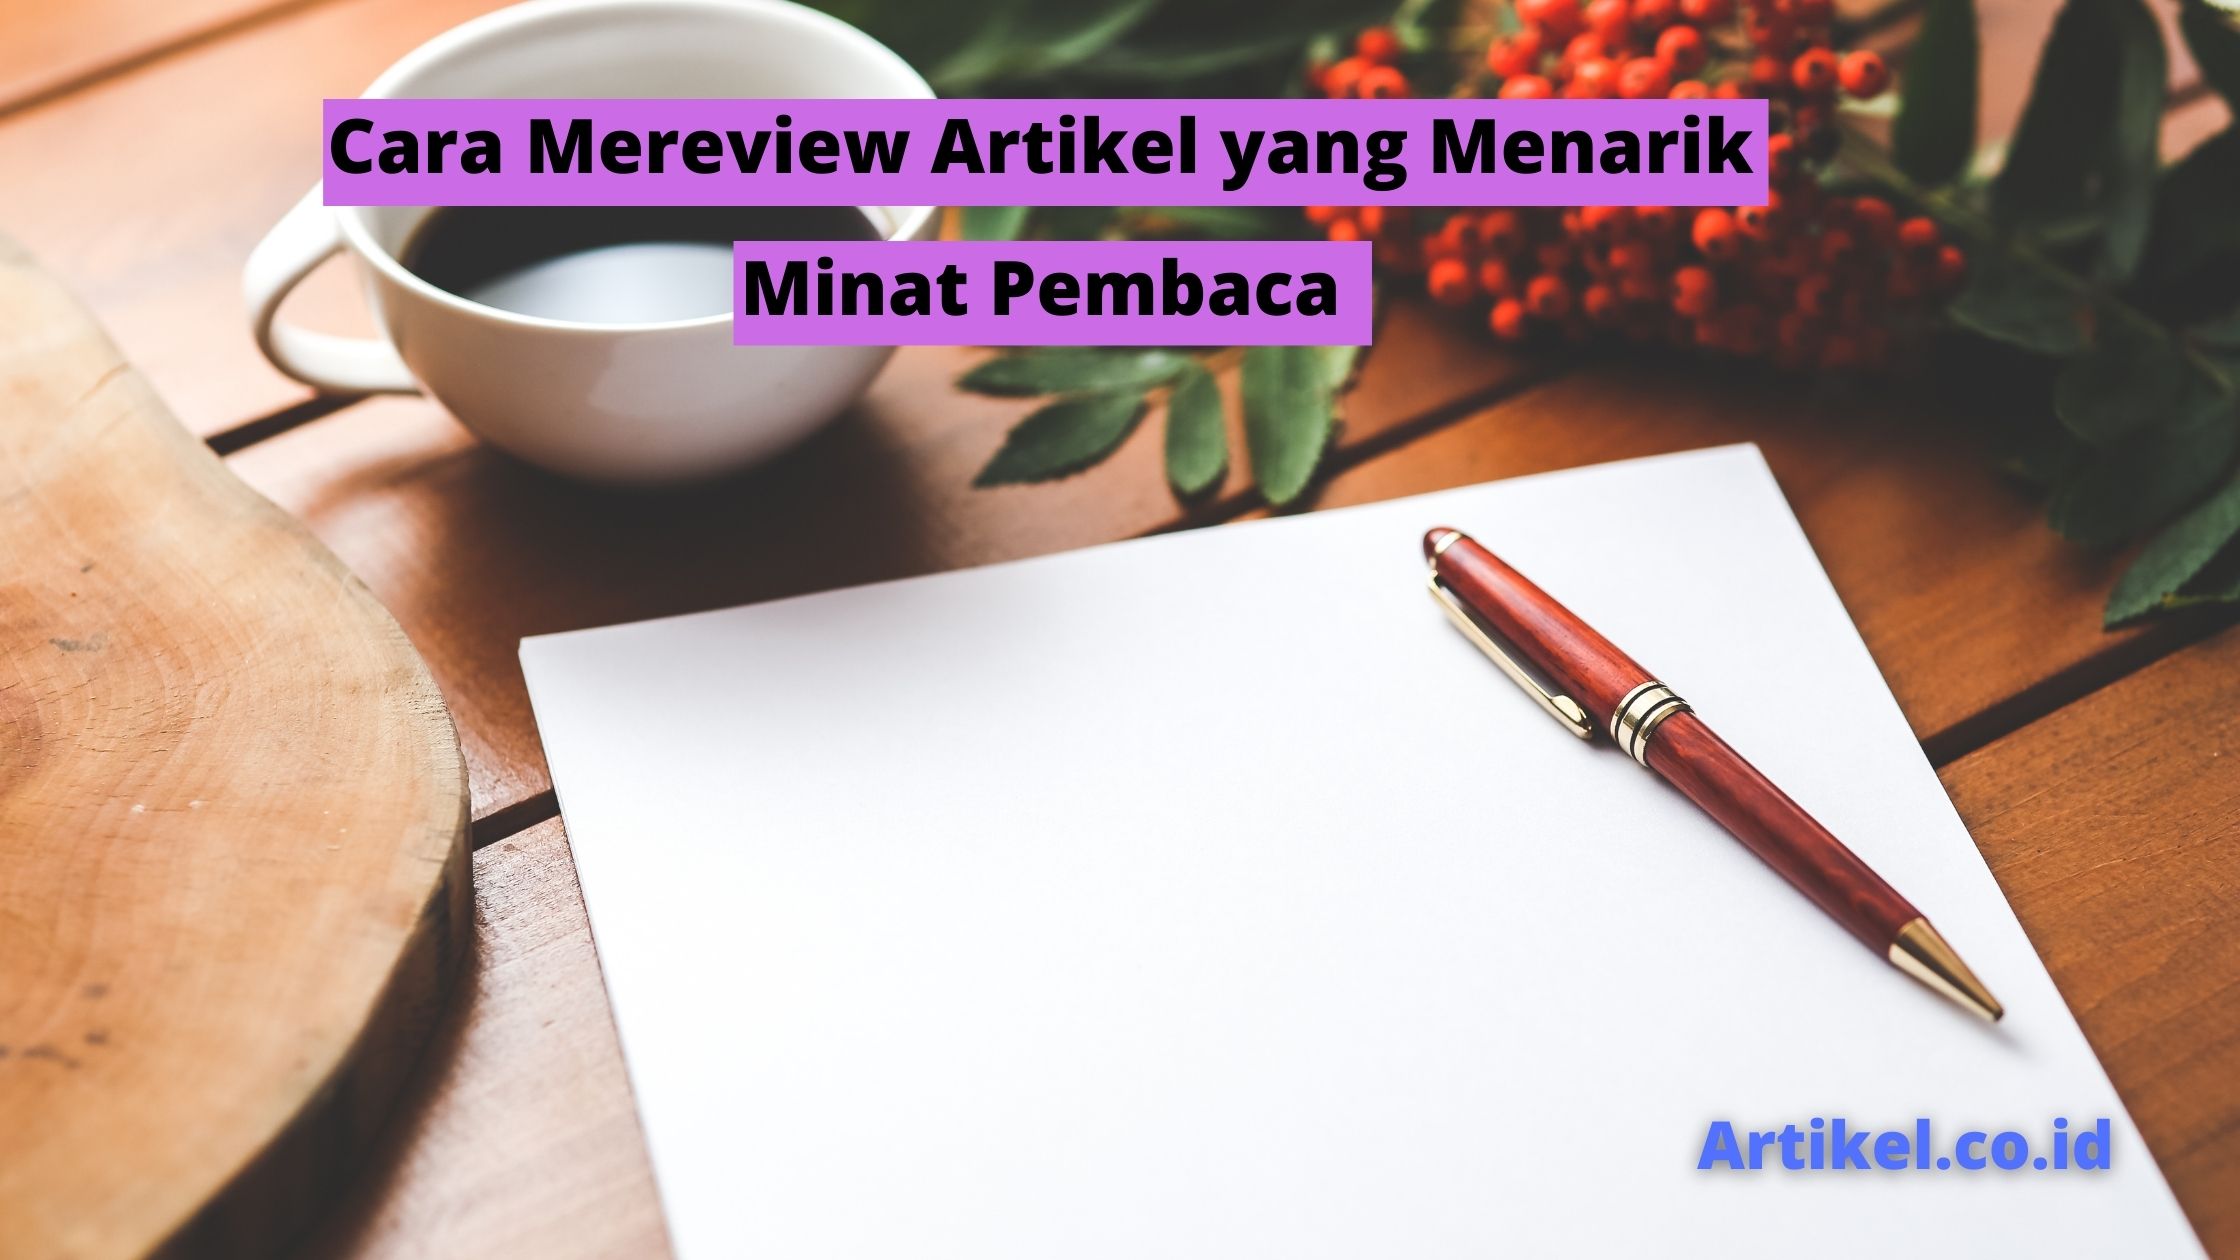 Read more about the article Cara Mereview Artikel yang Menarik Minat Pembaca